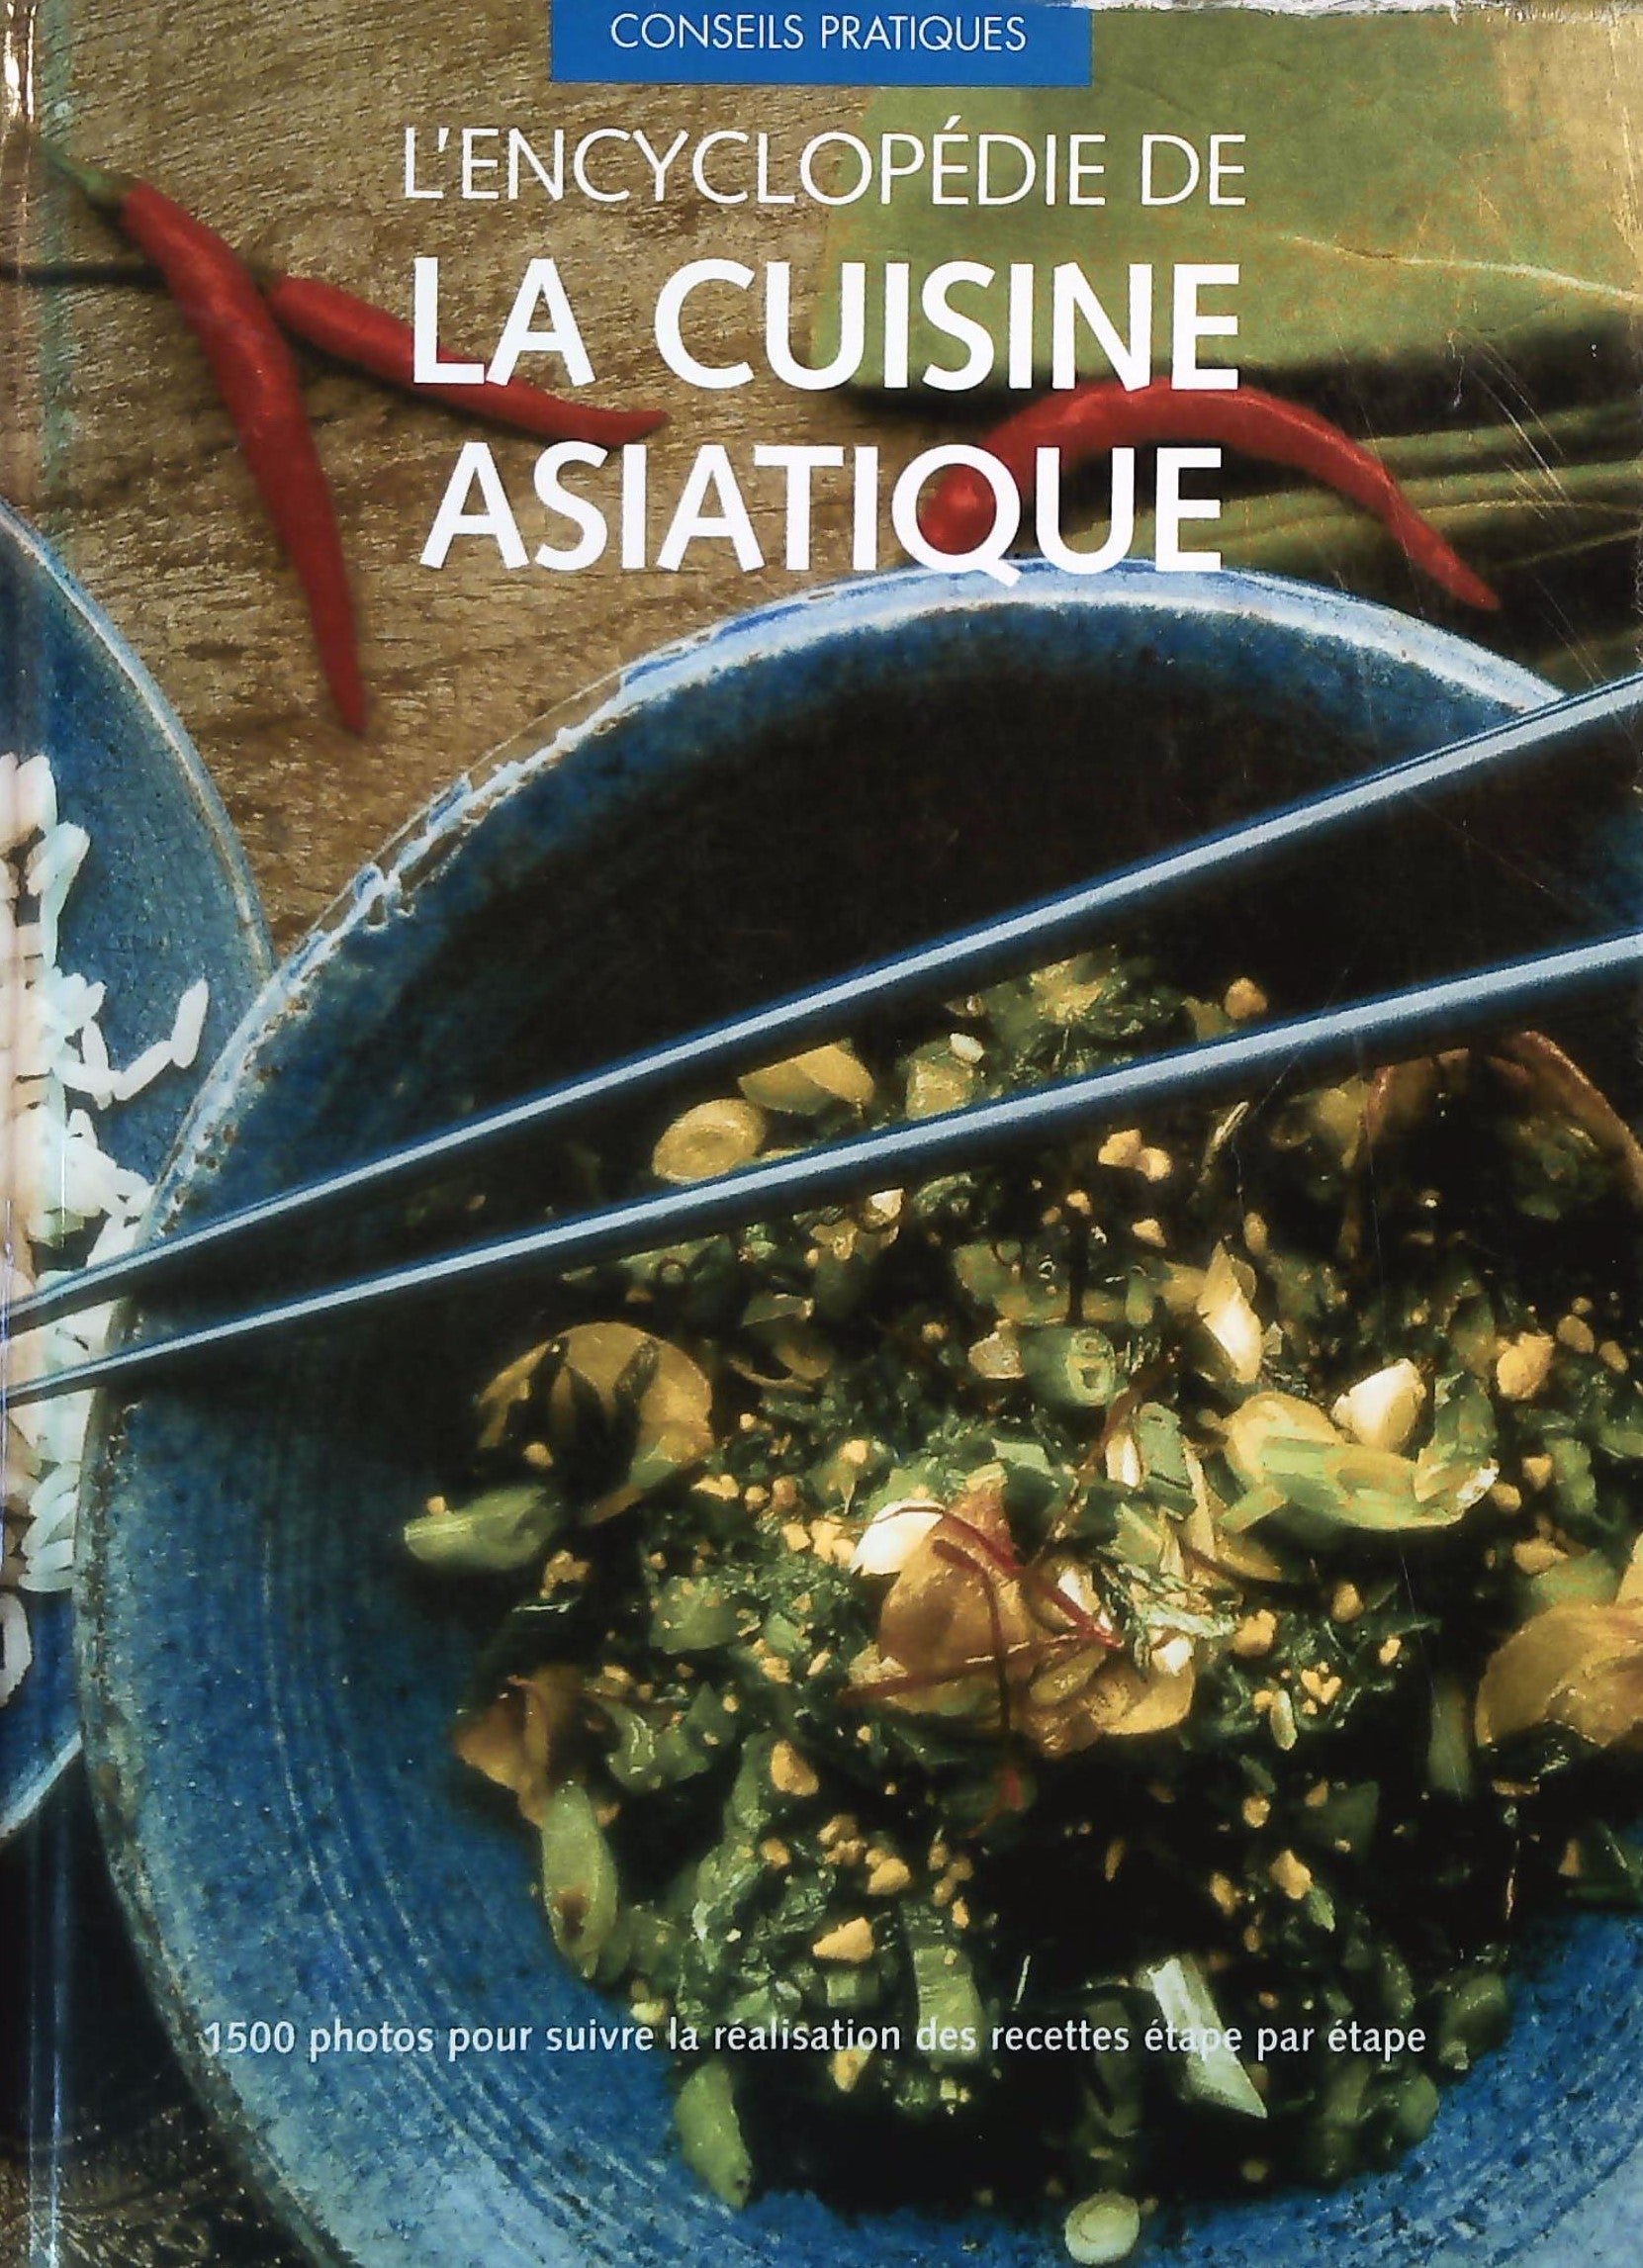 Cuisine asiatique - Tous en cuisine, Collectif